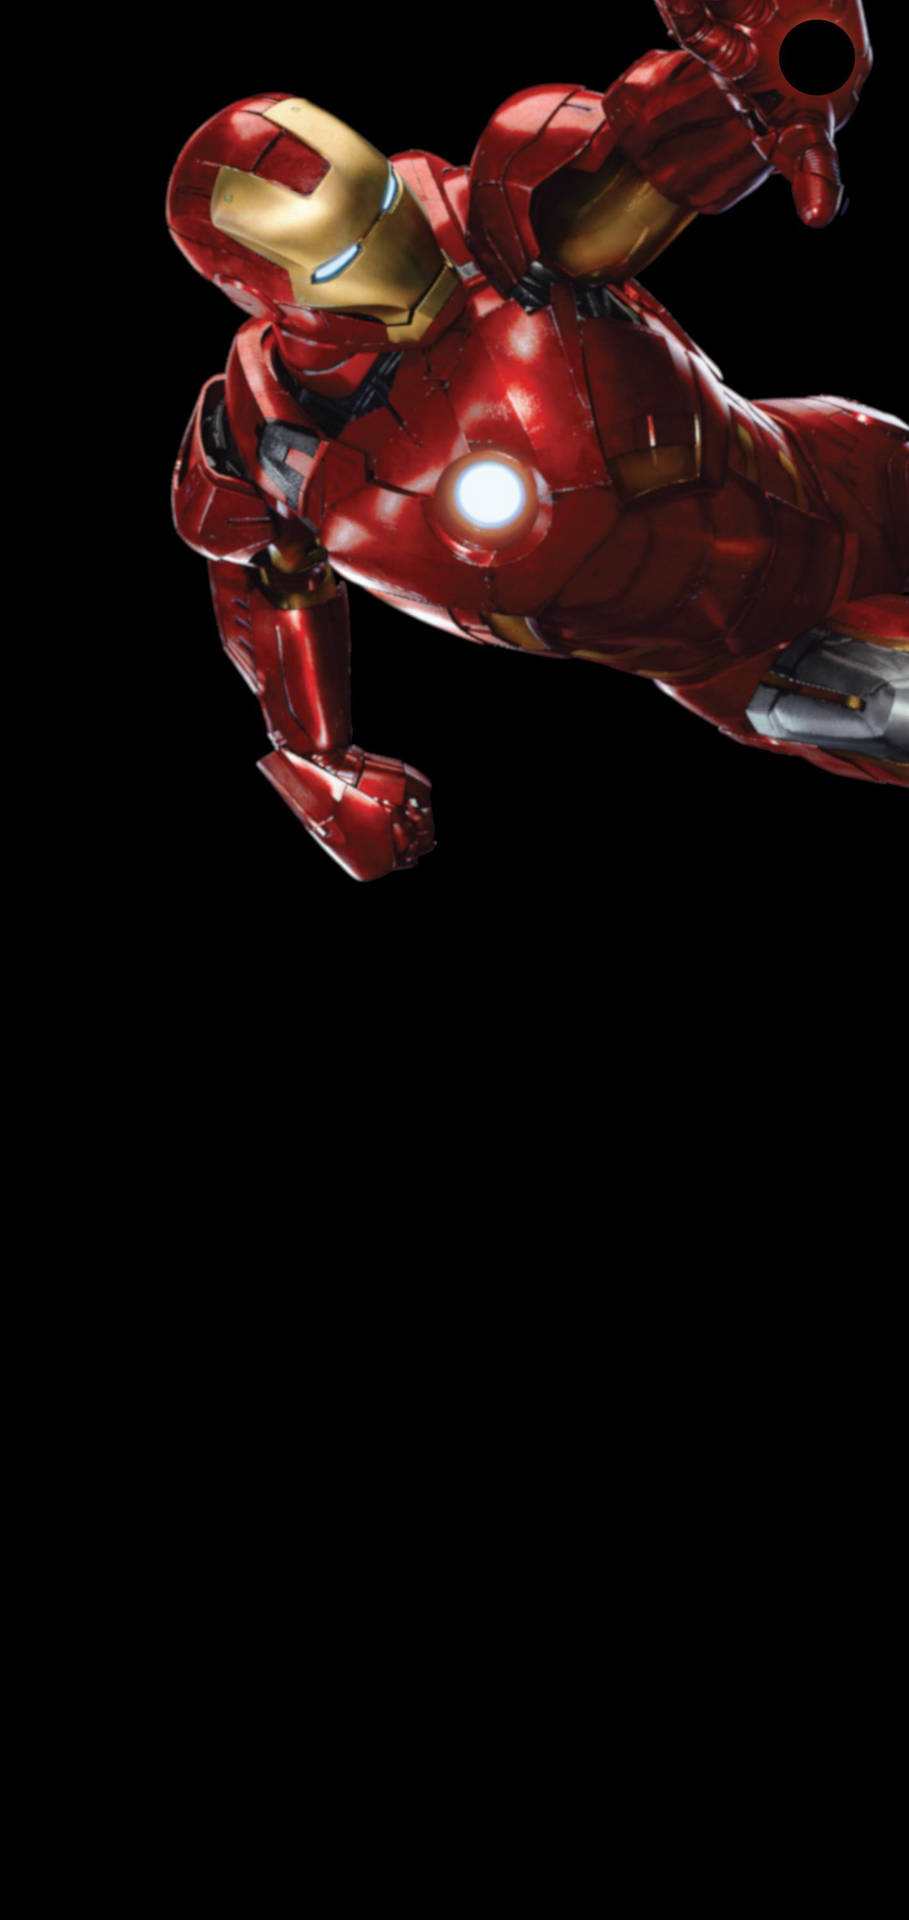 Samsung S10 Marvel's Iron Man